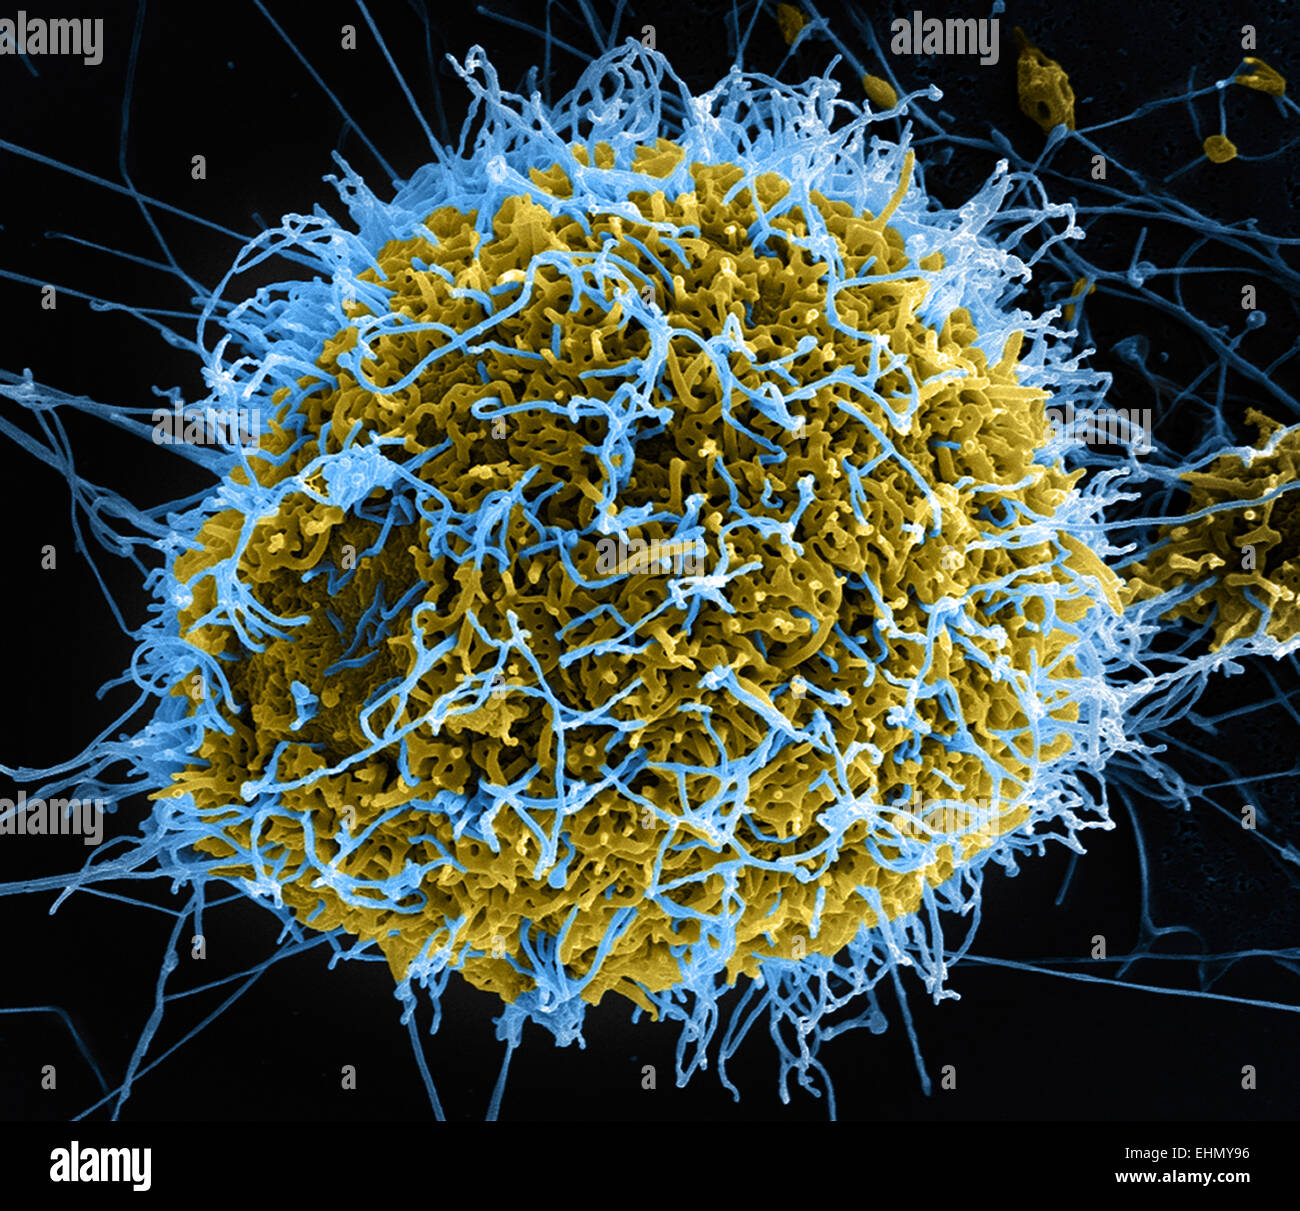 Color análisis micrografía de electrones (SEM) de partículas del virus de ébola. Foto de stock